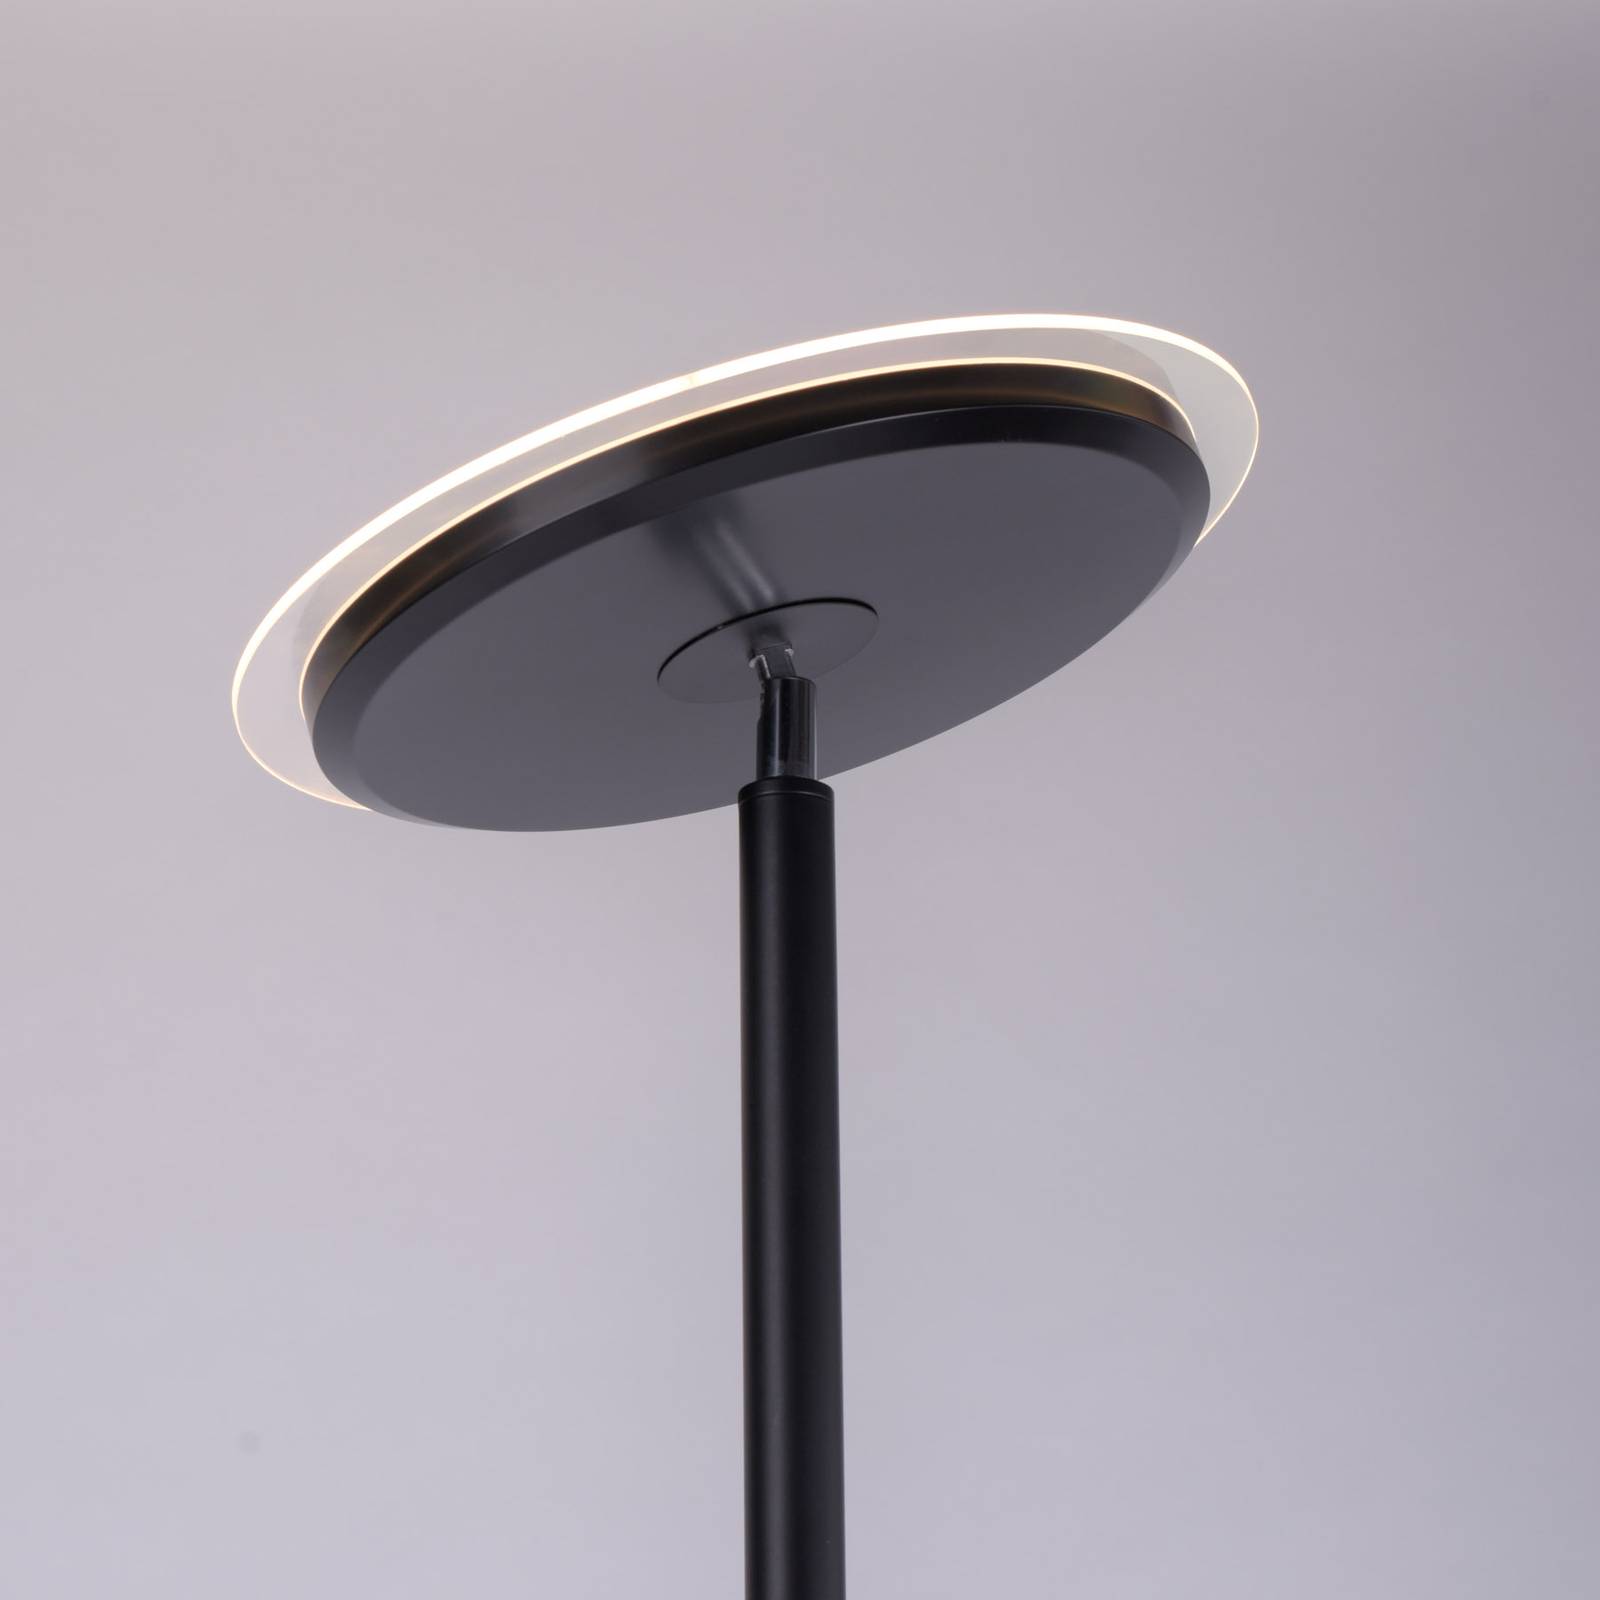 Hans-LED-lattiavalo lukulampulla pyöreä musta